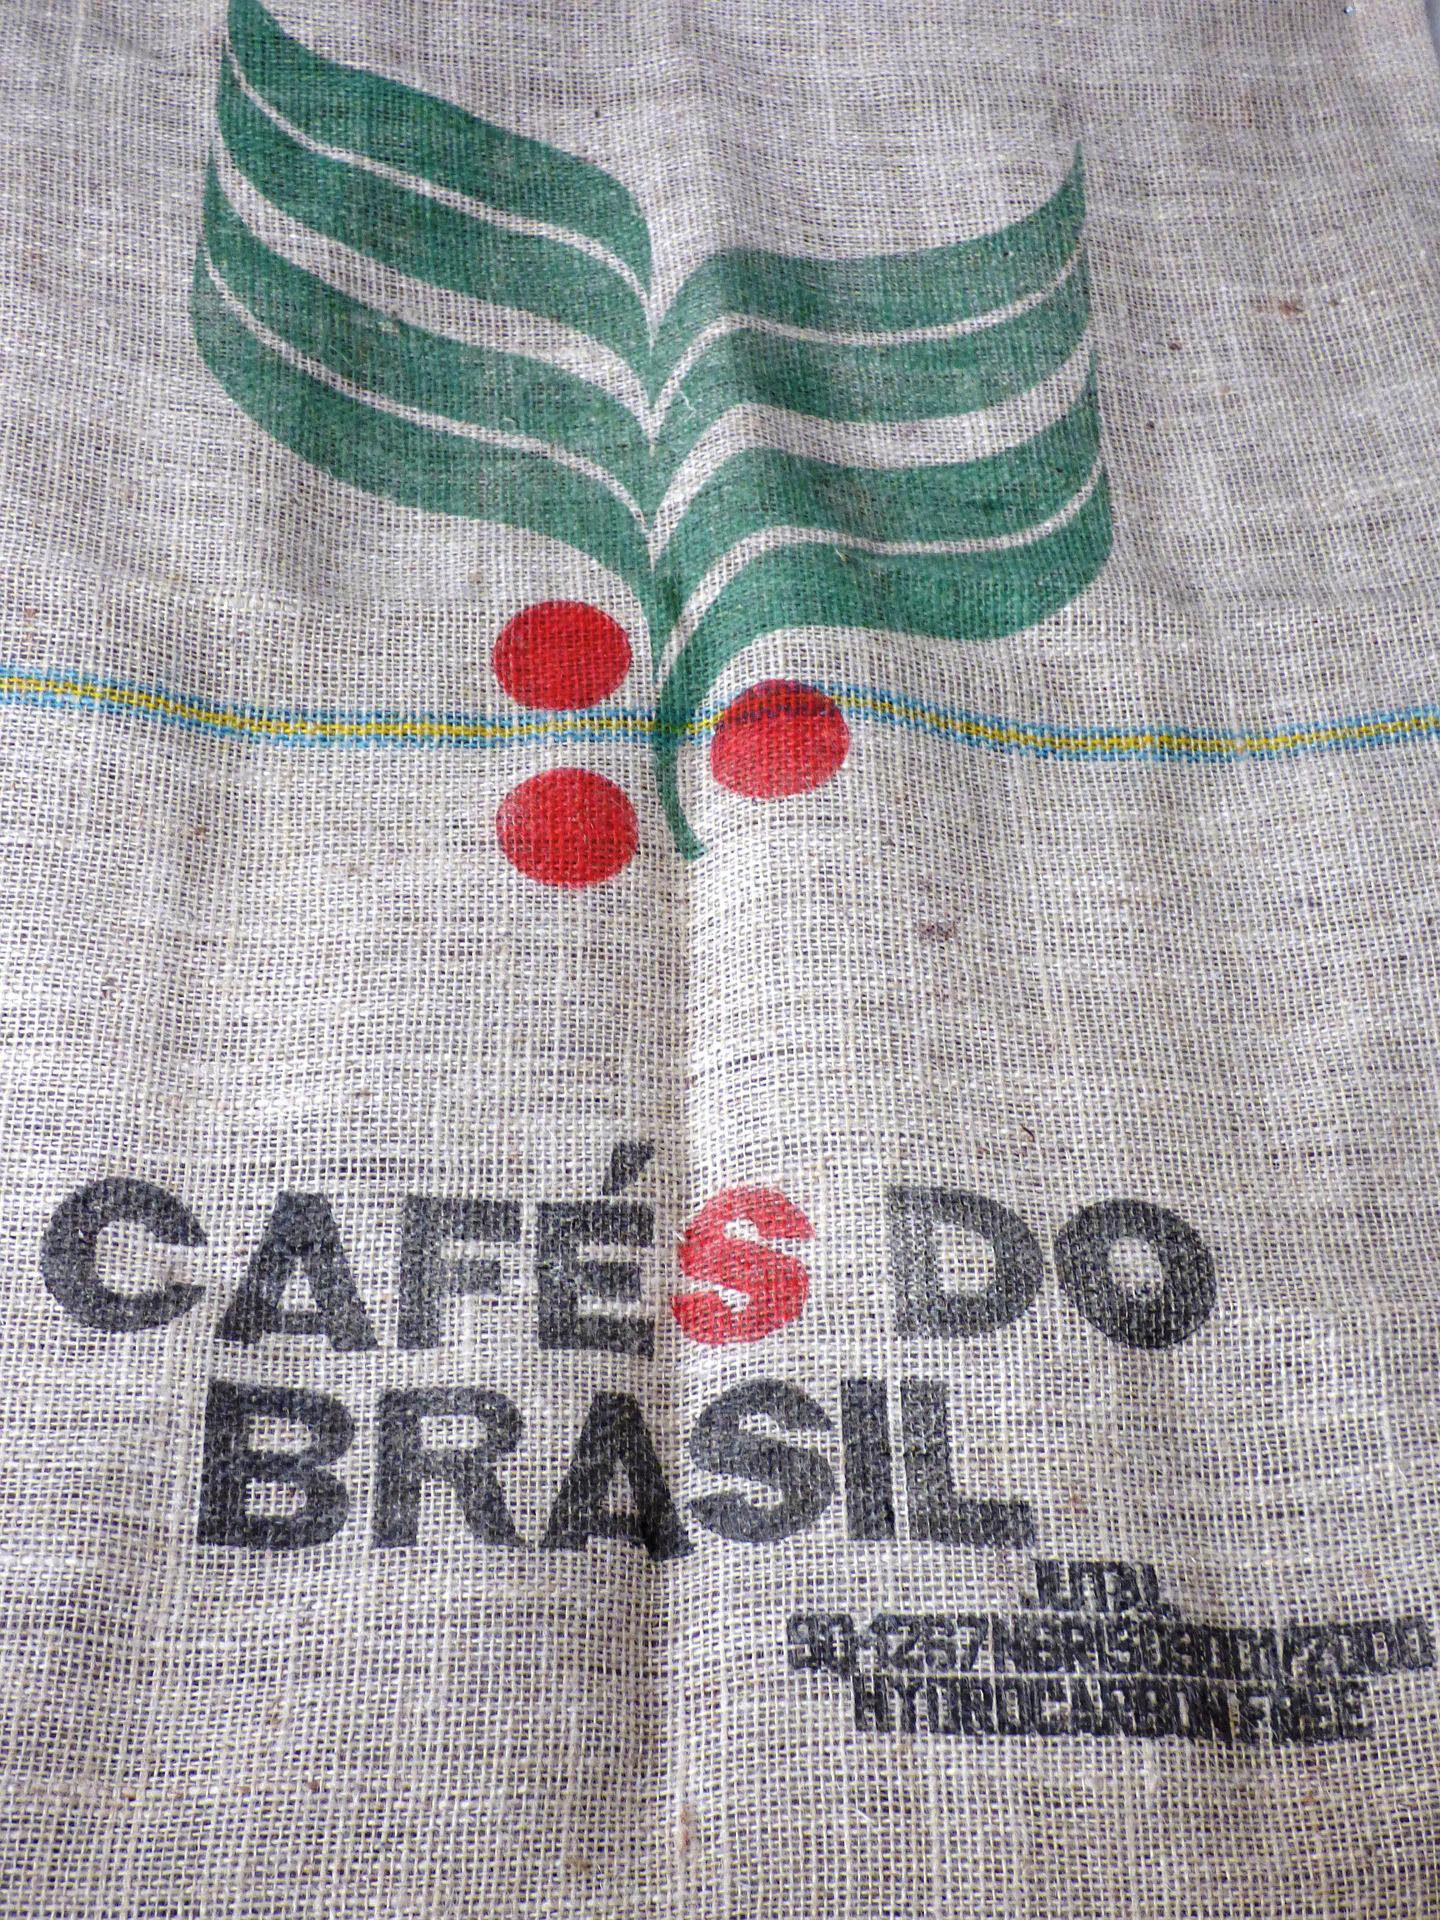 Impactada por clima adverso, safra de café 2022 pode chegar a 53,4 milhões de sacas